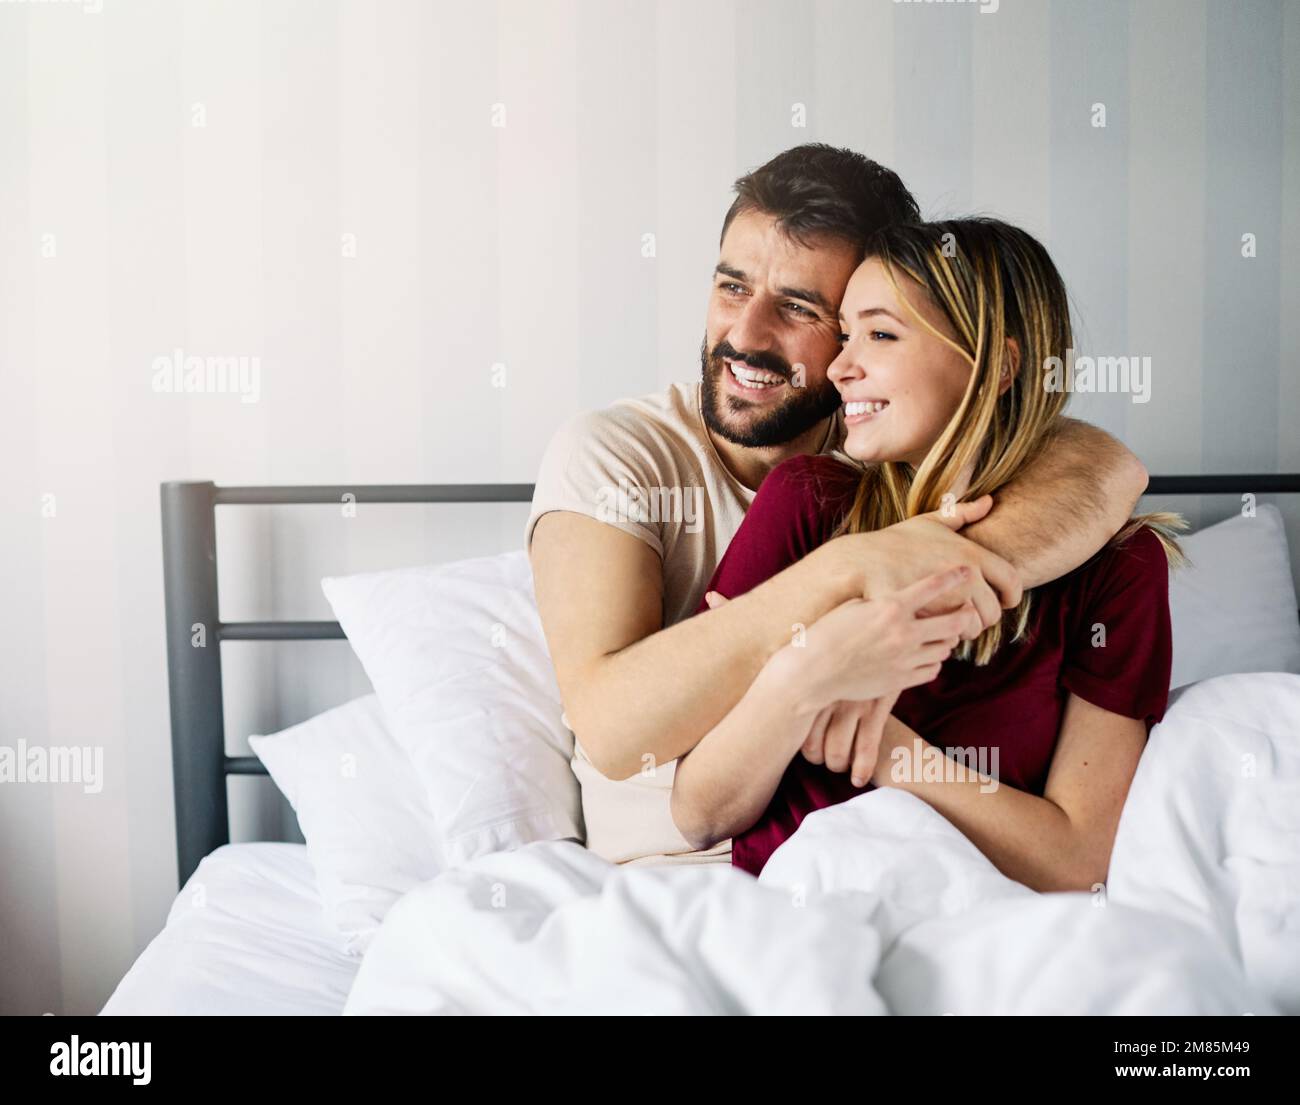 Paar Liebe Schlafzimmer Bett liegen Romantik glücklich Beziehung  valentinstag zusammen Mann Frau Stockfotografie - Alamy